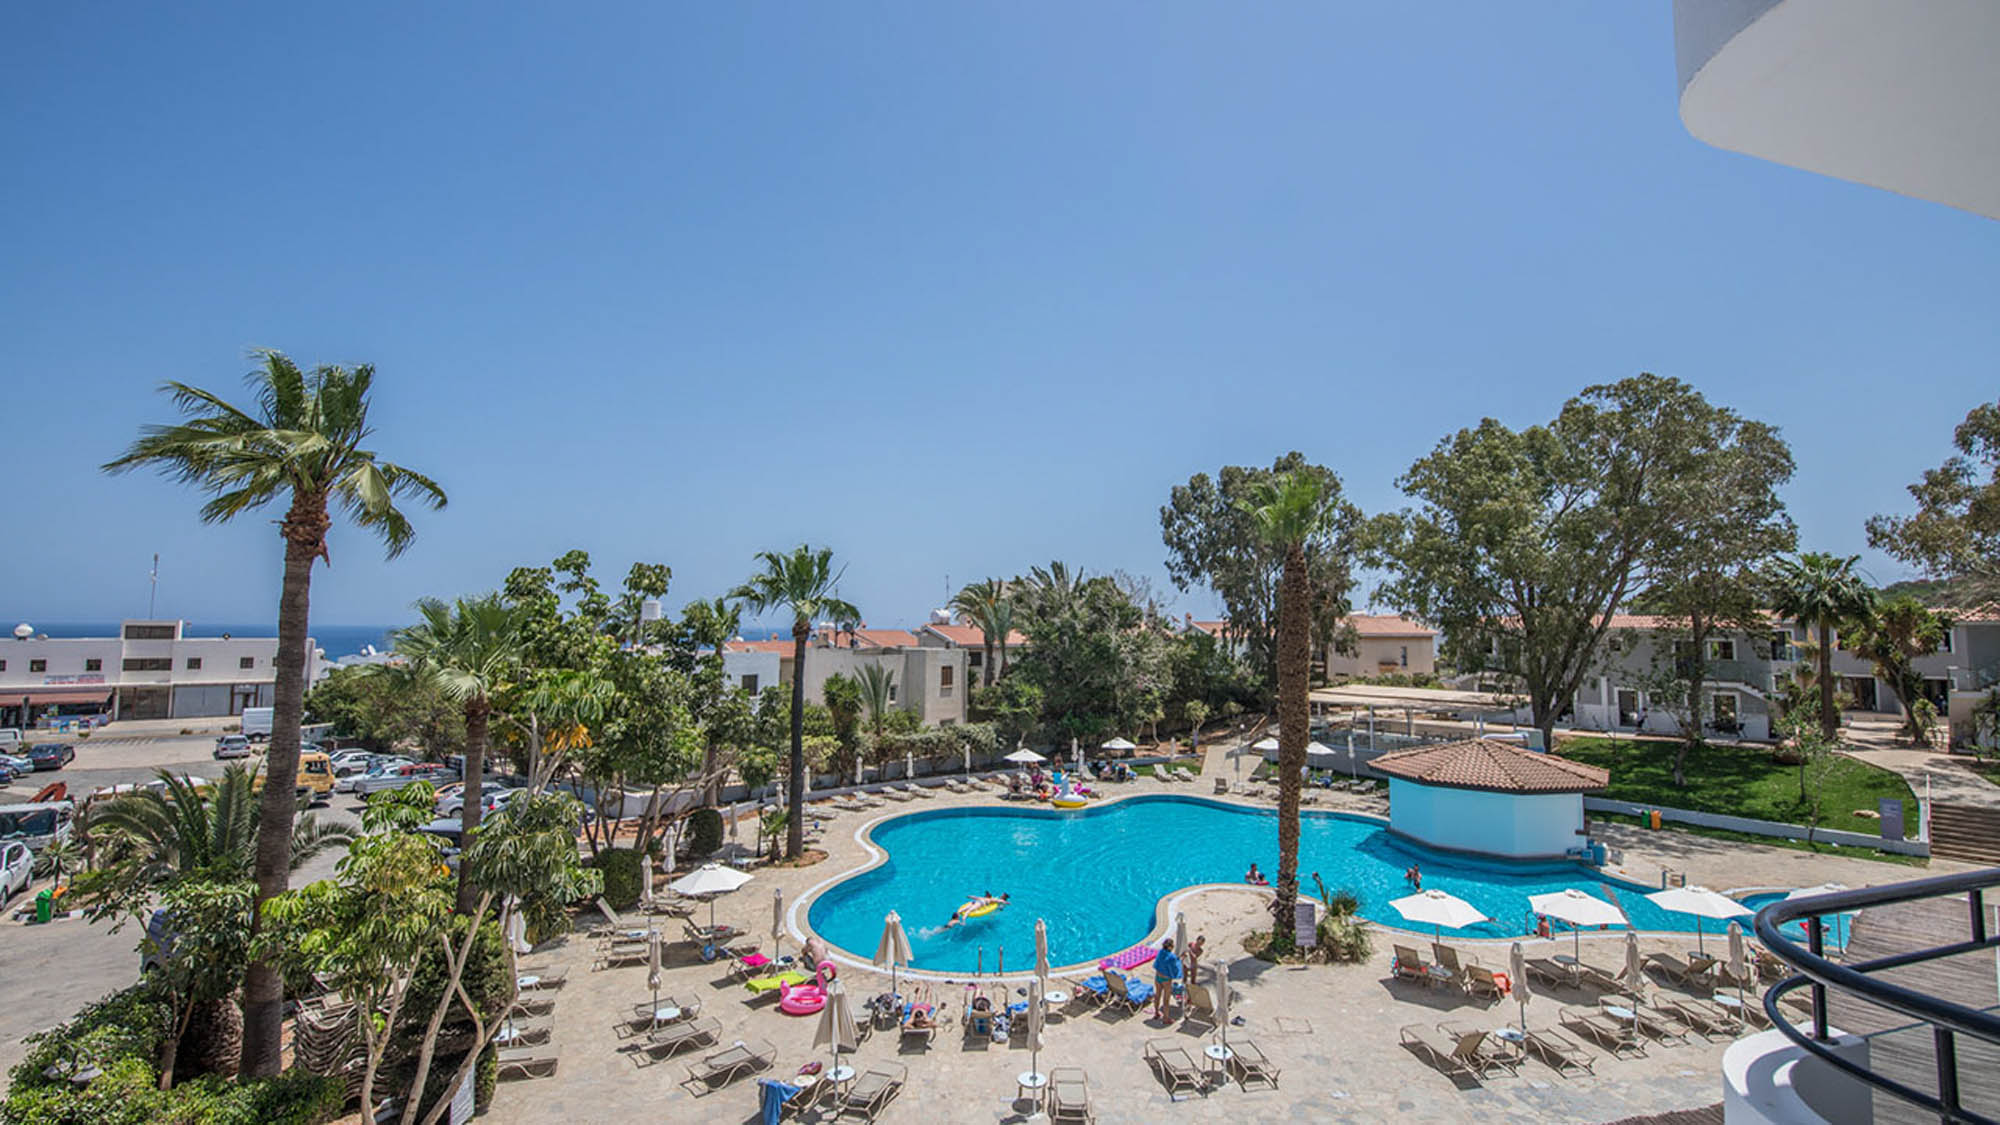 hotelowy basen z palmami, a w tle niebieskie niebo